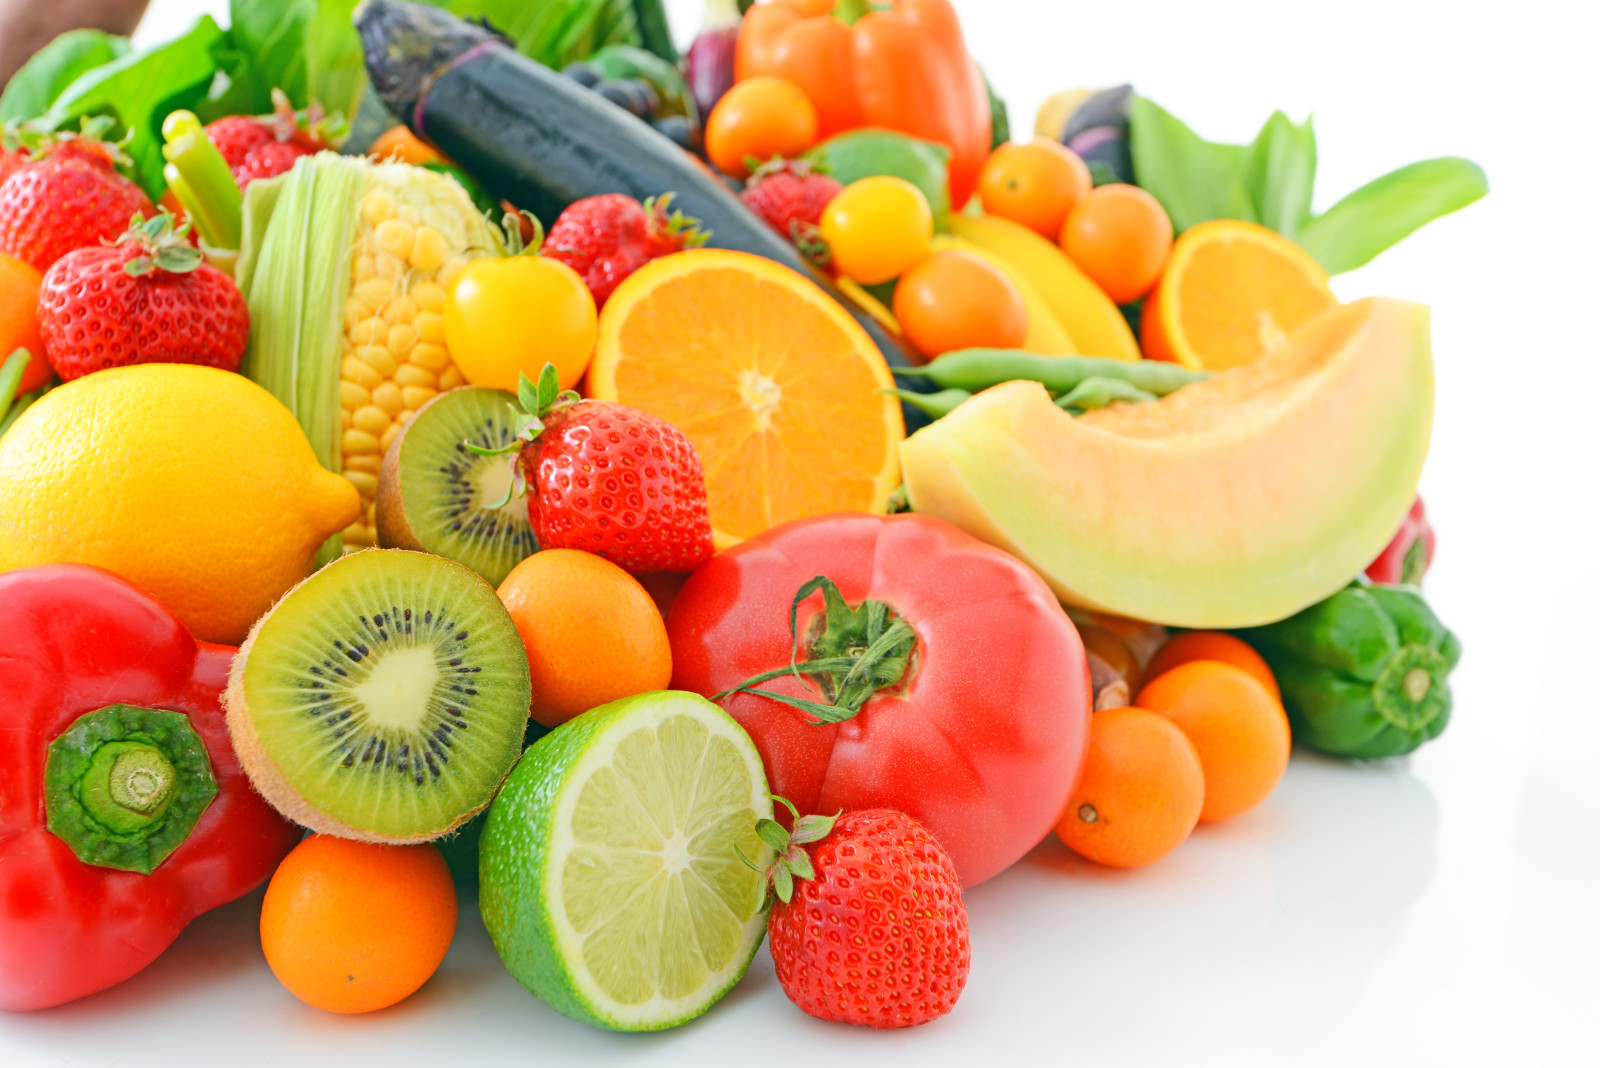 野菜, ベリー類, 新鮮な, フルーツ, 果物